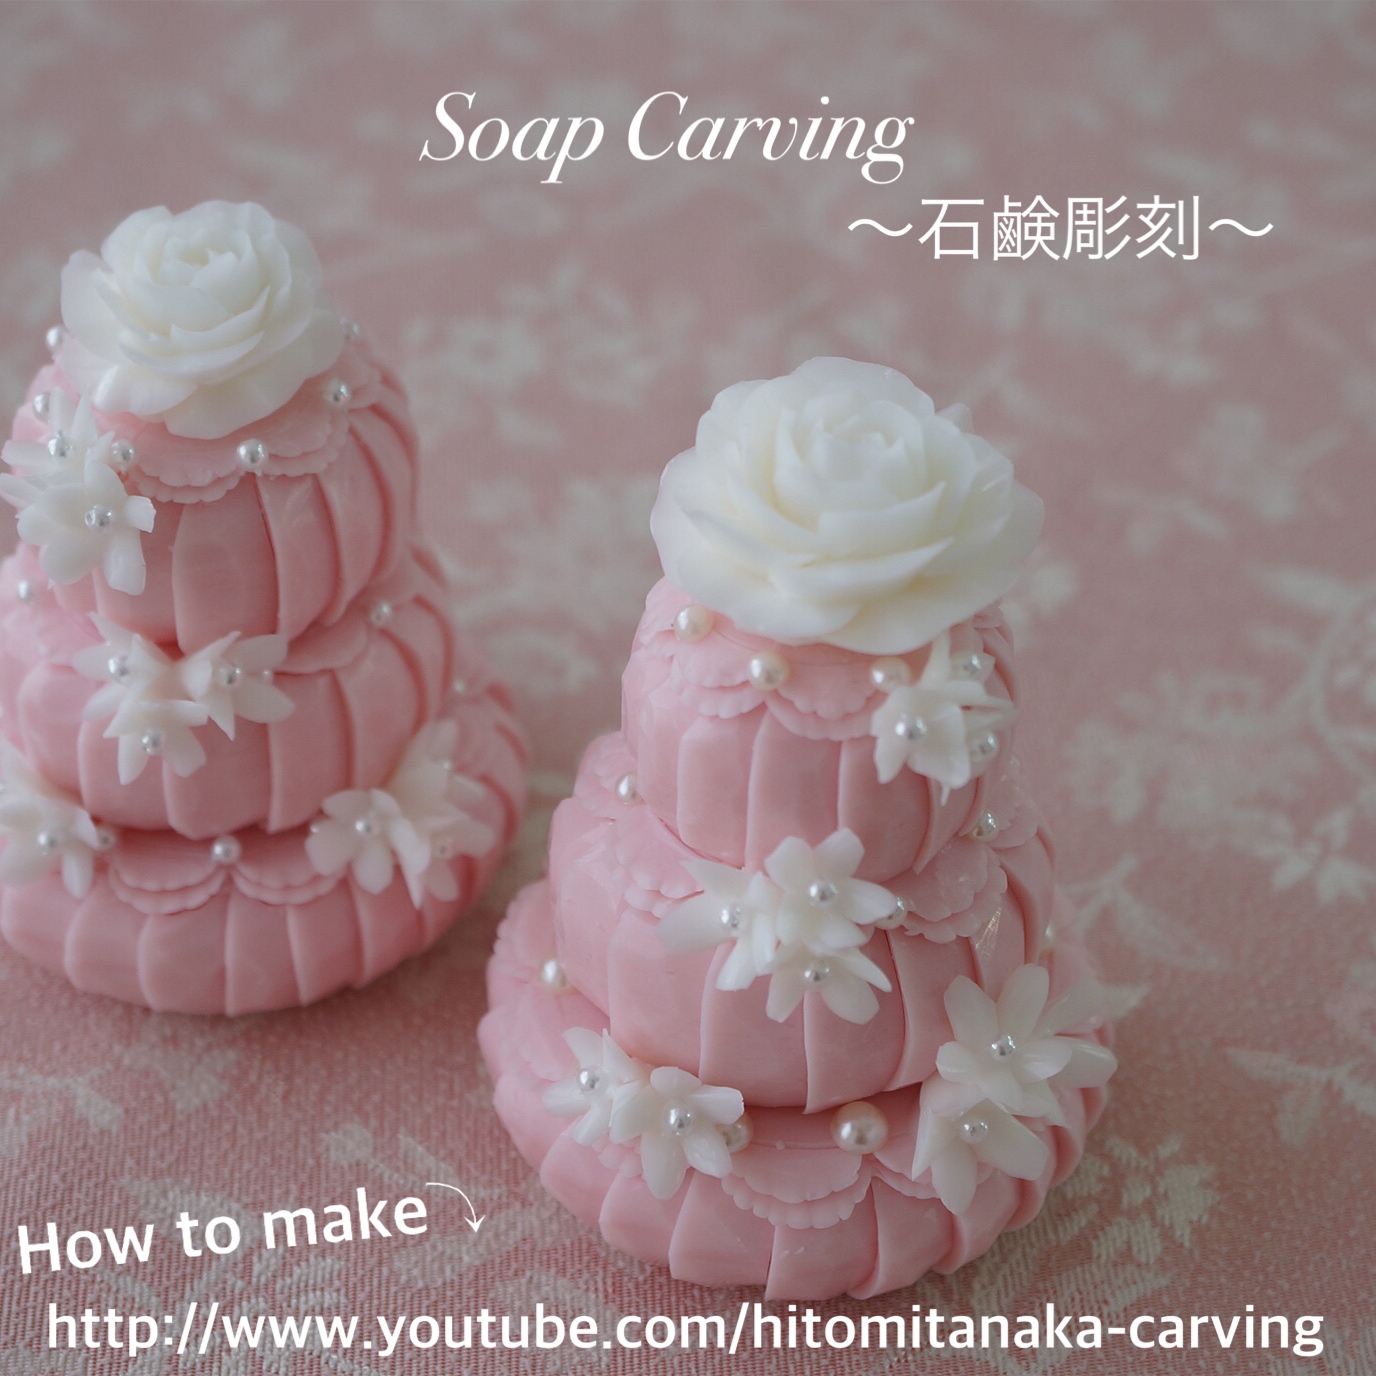 ソープカービング石鹸ケーキの作り方 カービング サンシャインスクールblog 初心者向けソープカービング桜 福岡のカービングスクール サンシャインスクール